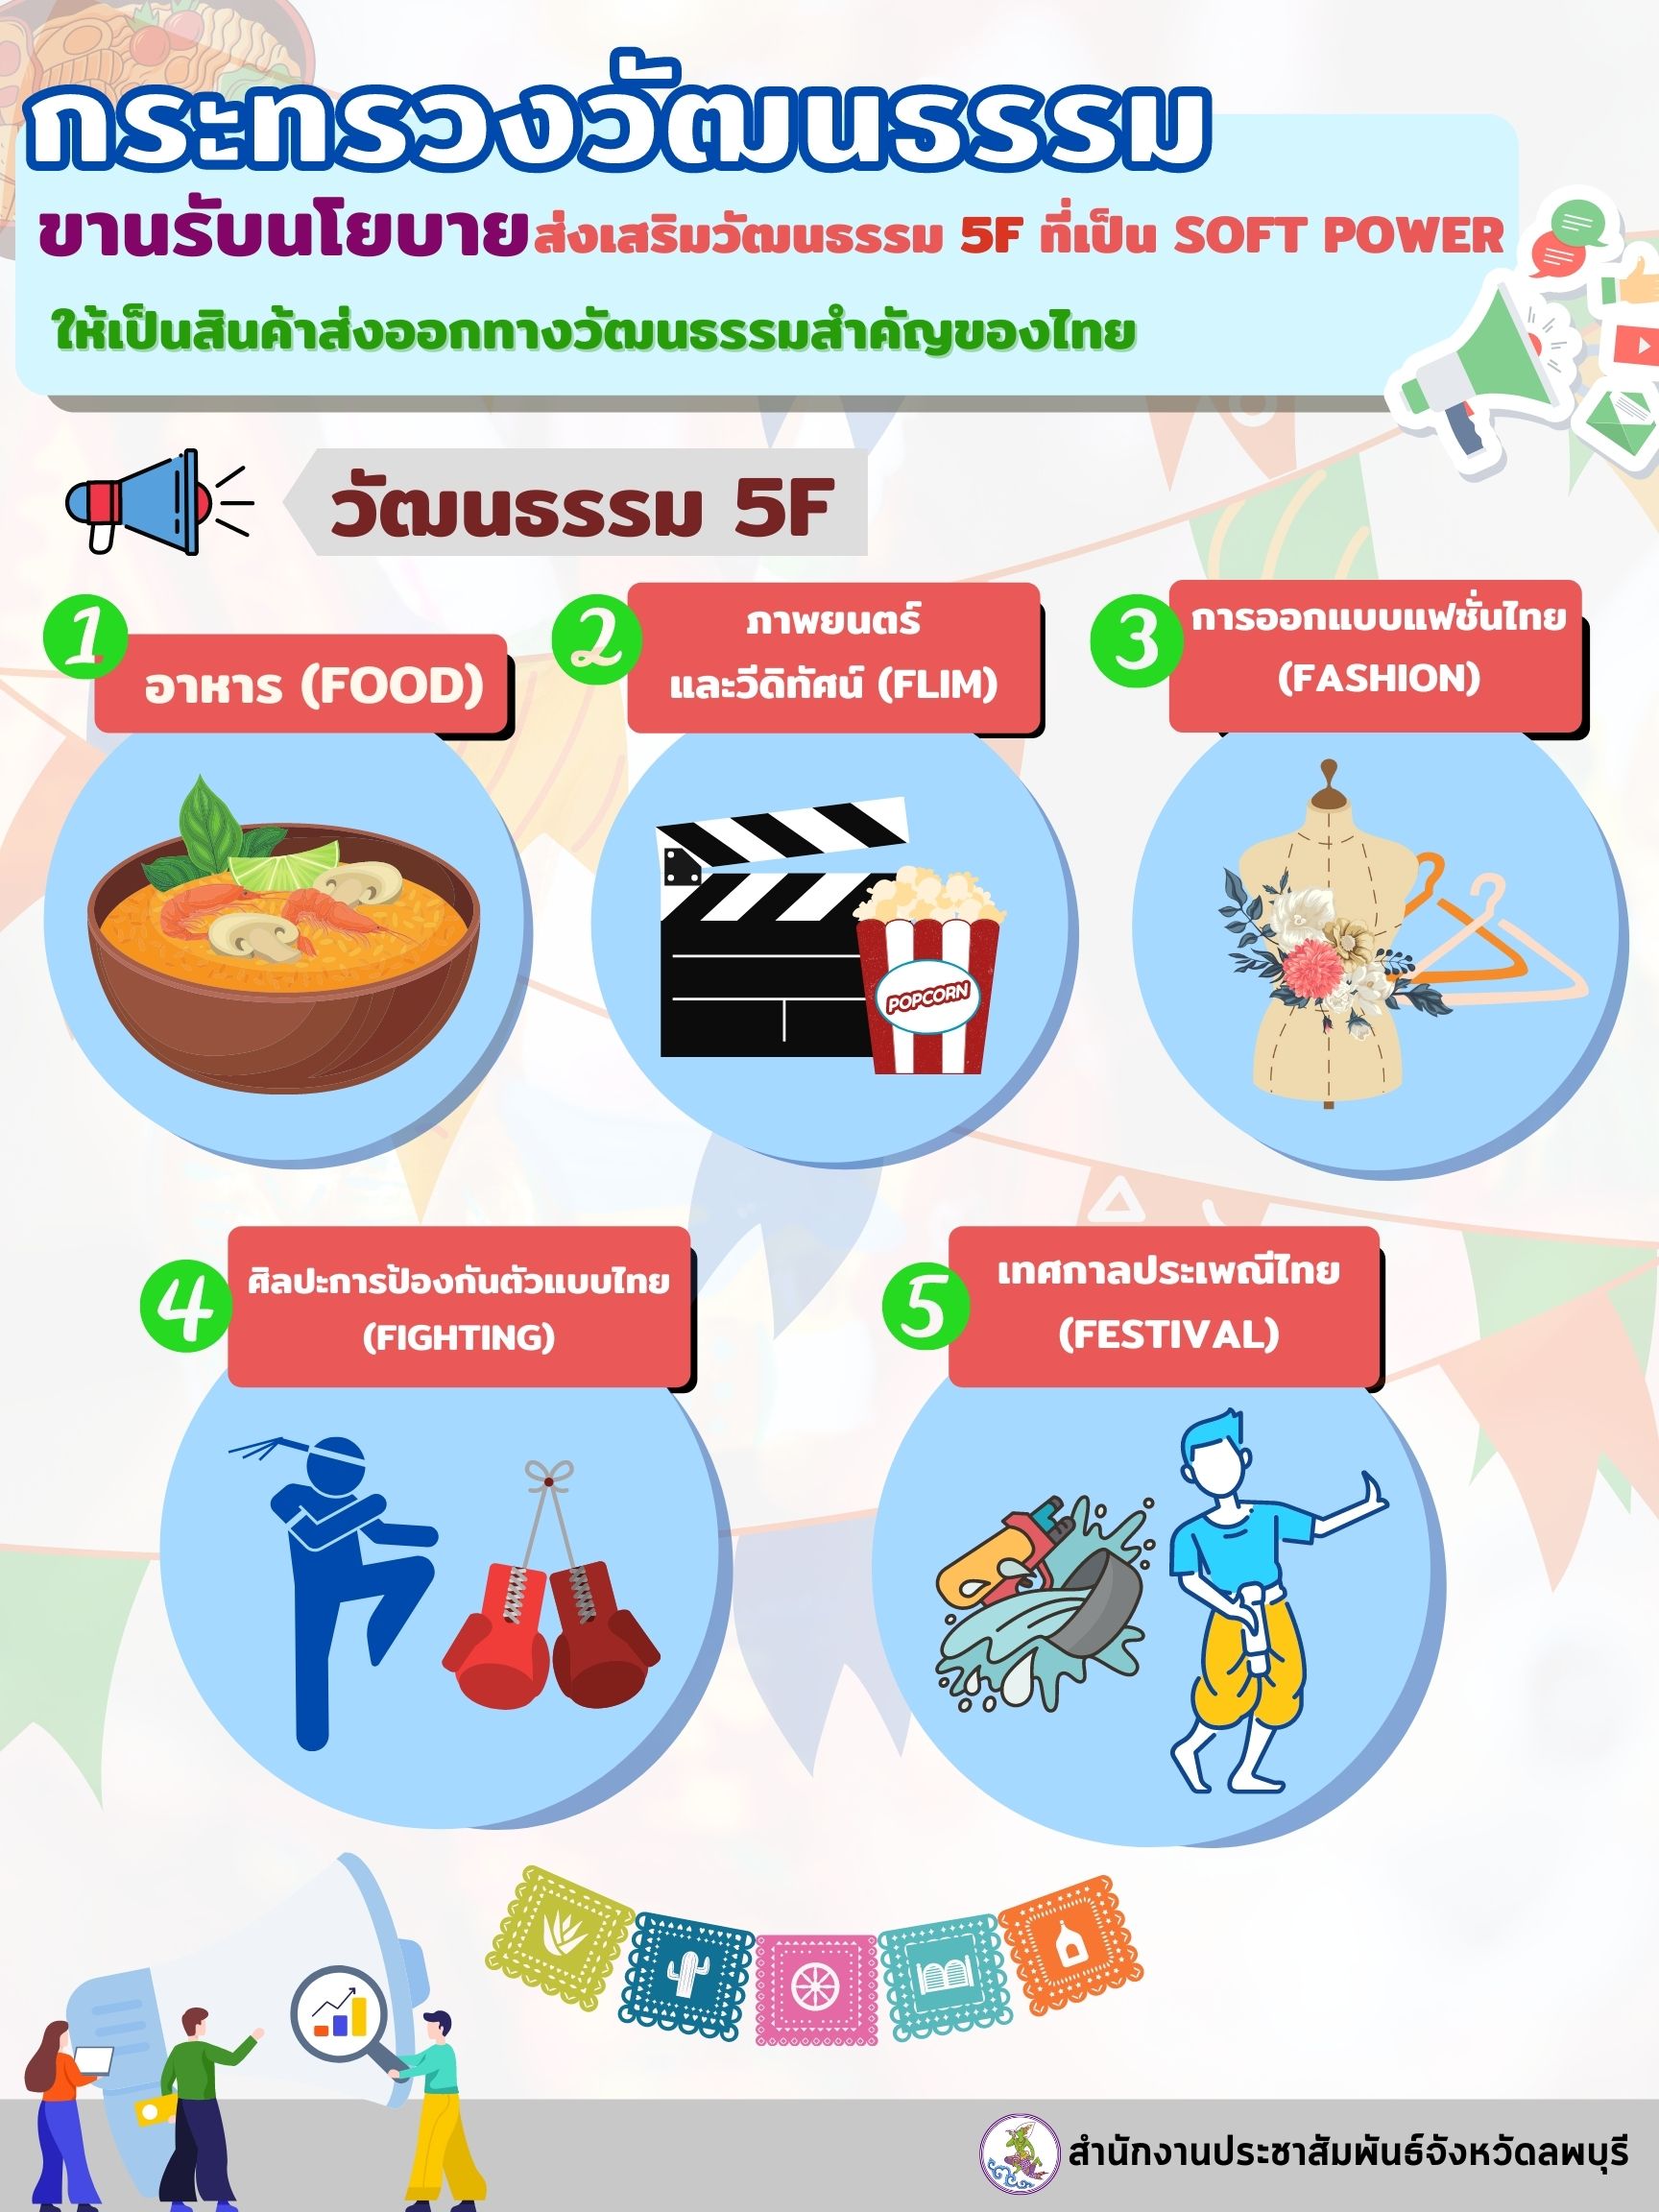 กระทรวงวัฒนธรรม ขานรับนโยบายมุ่งส่งเสริมวัฒนธรรม 5 F ที่เป็น Soft Power ของไทย ให้กลายเป็นสินค้าส่งออกทางวัฒนธรรมสำคัญของไทย